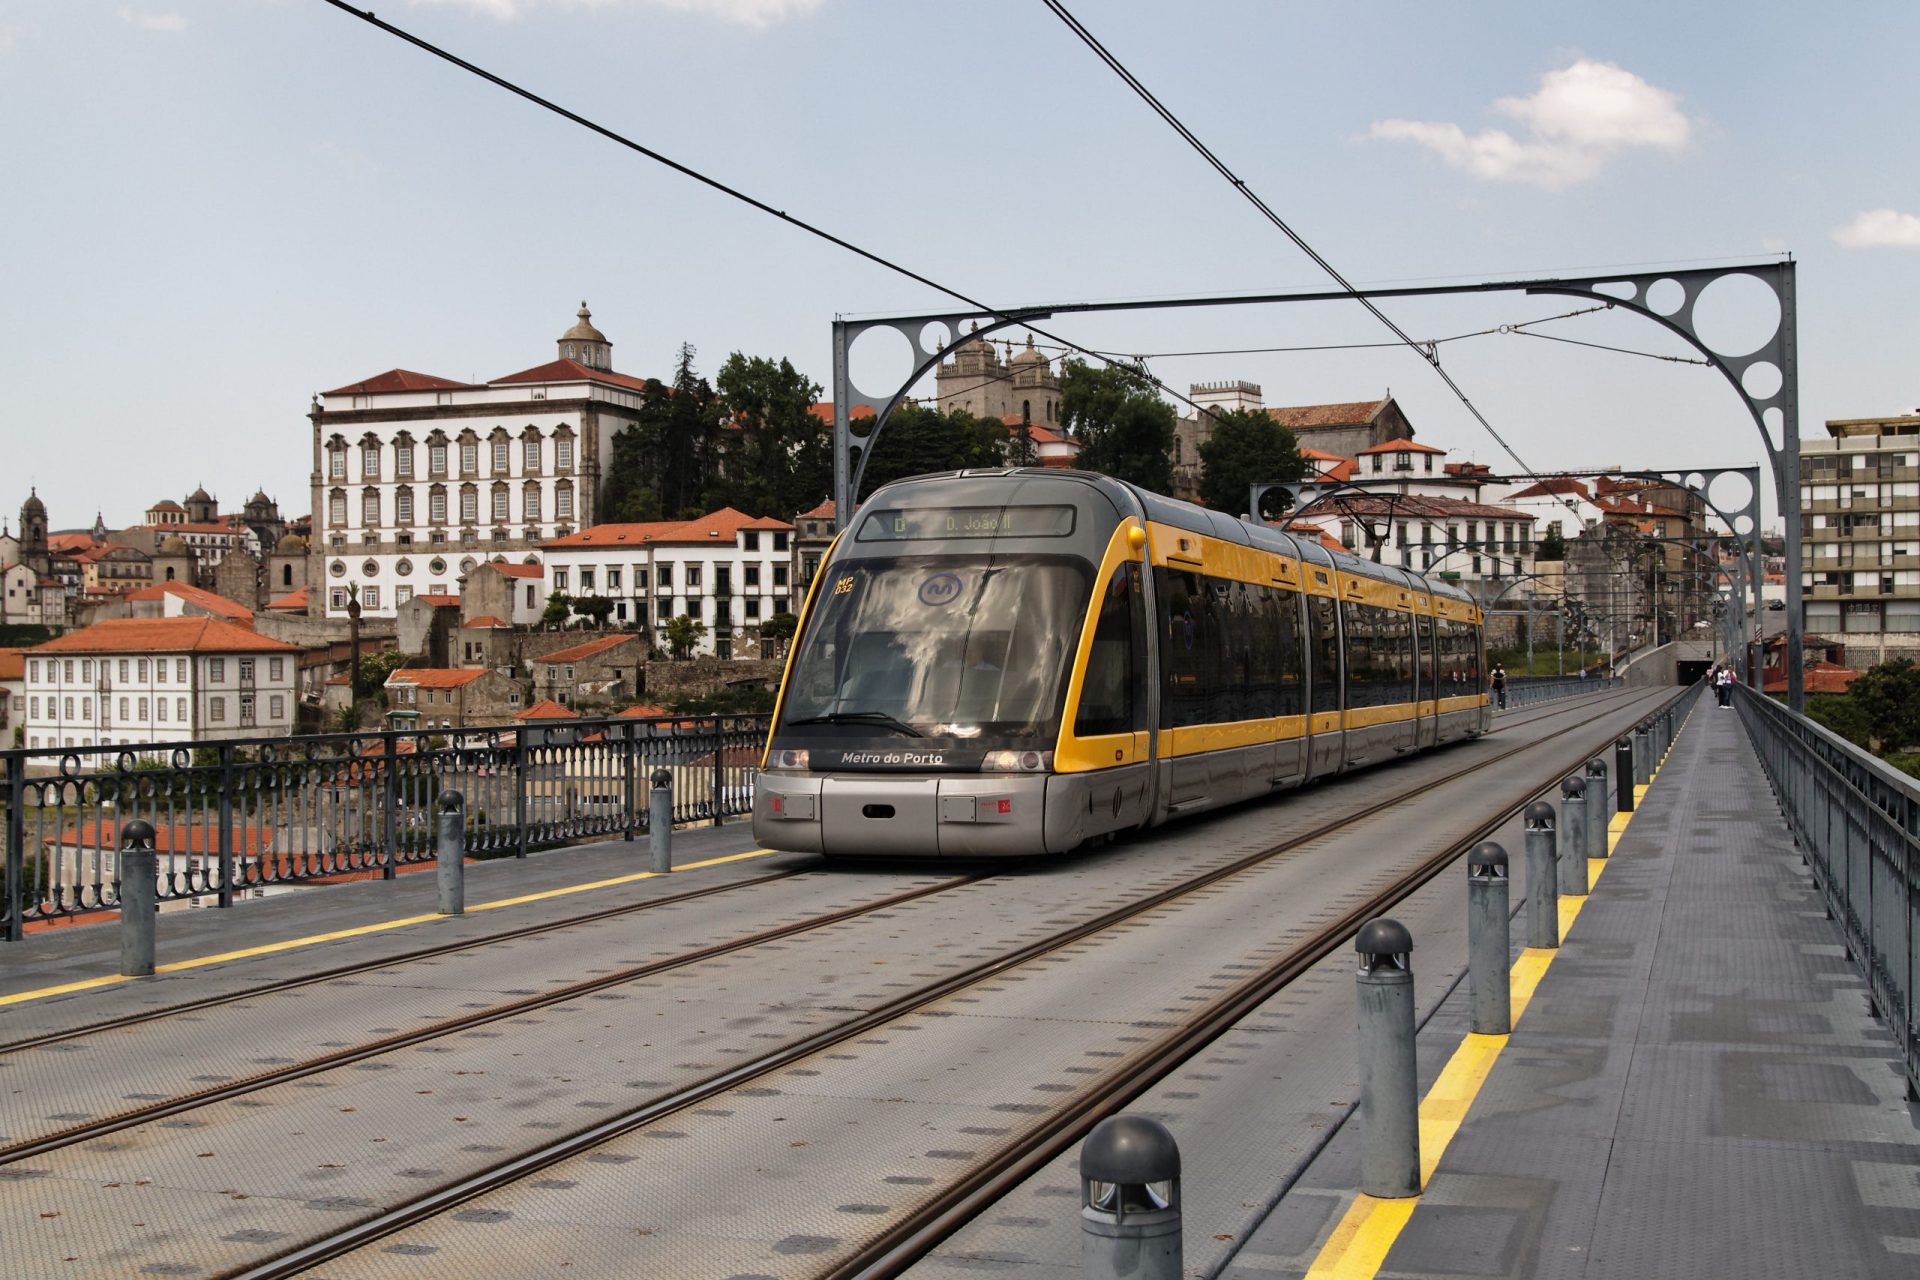 Saiba quem são a Alsa e a Transdev, que querem gerir a STCP e a Metro do Porto